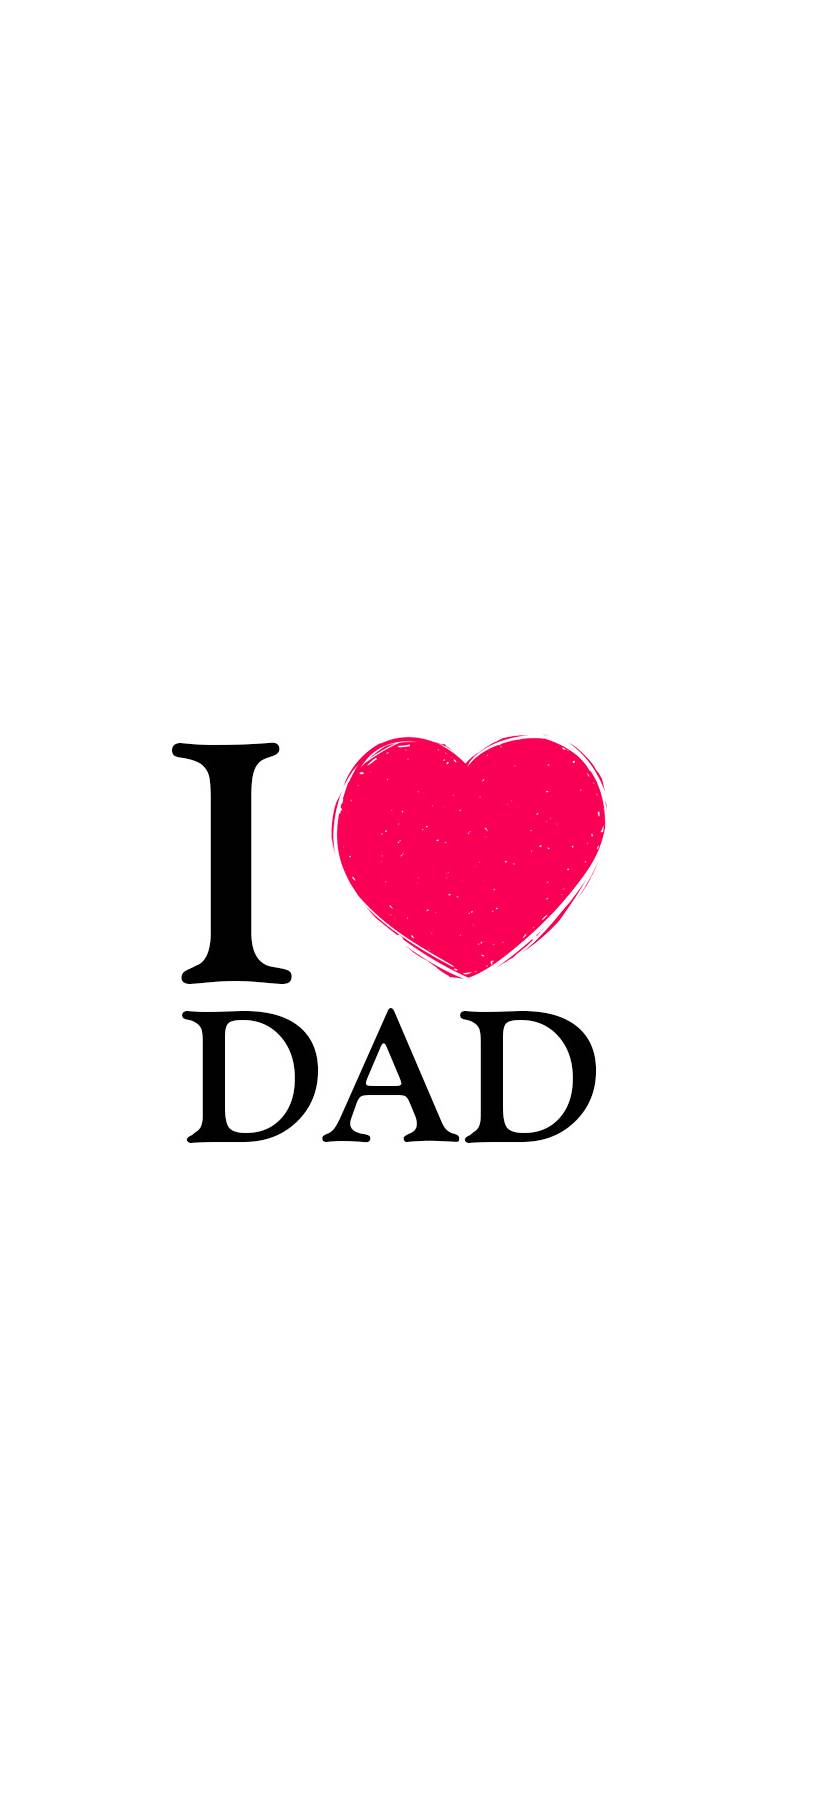 I Love You Dad Wallpaper 840x10